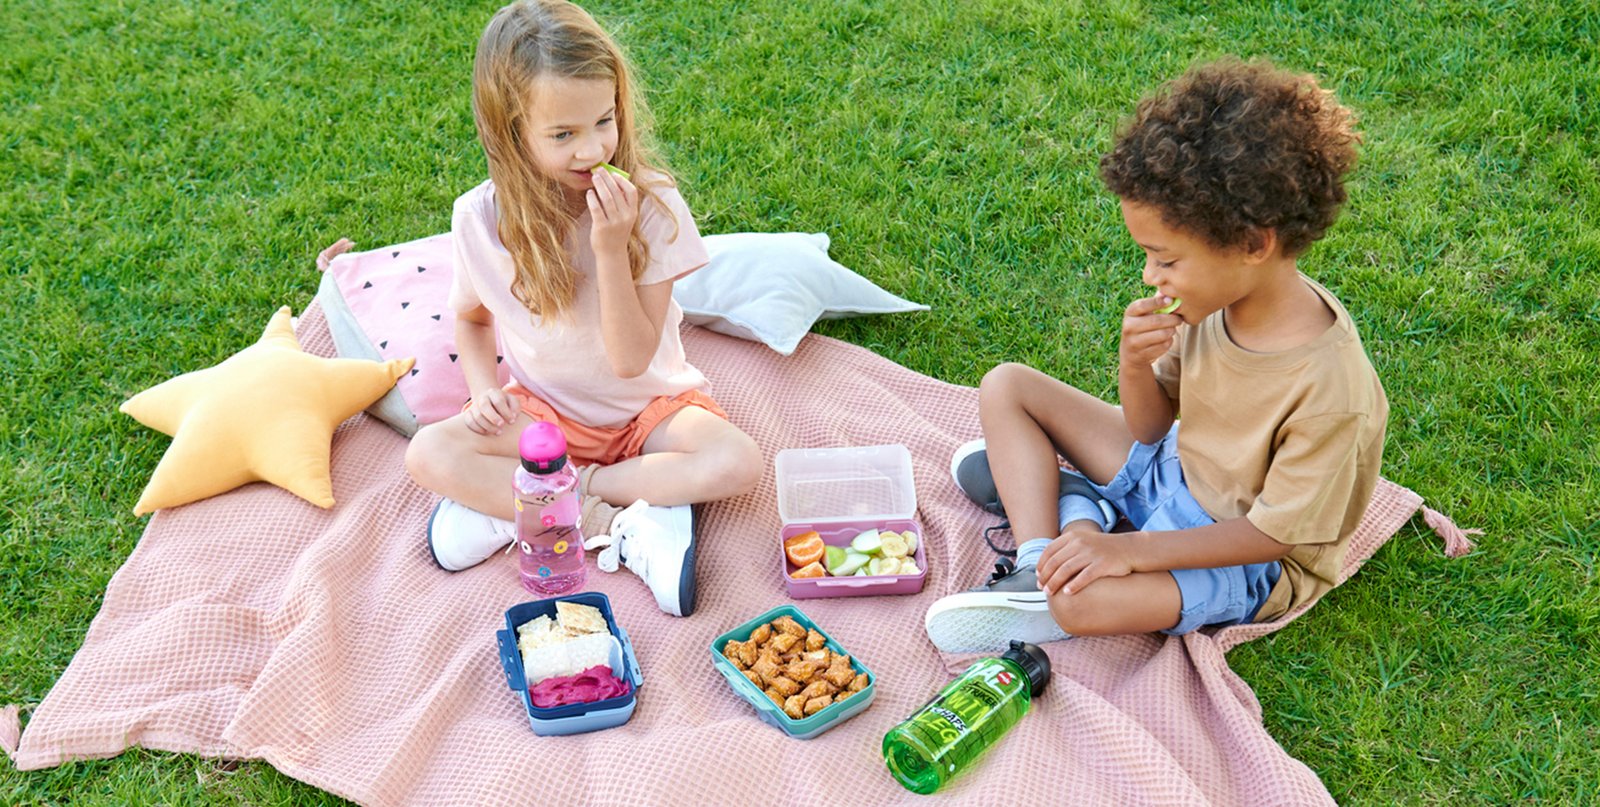 Heute machen wir ein Picknick!